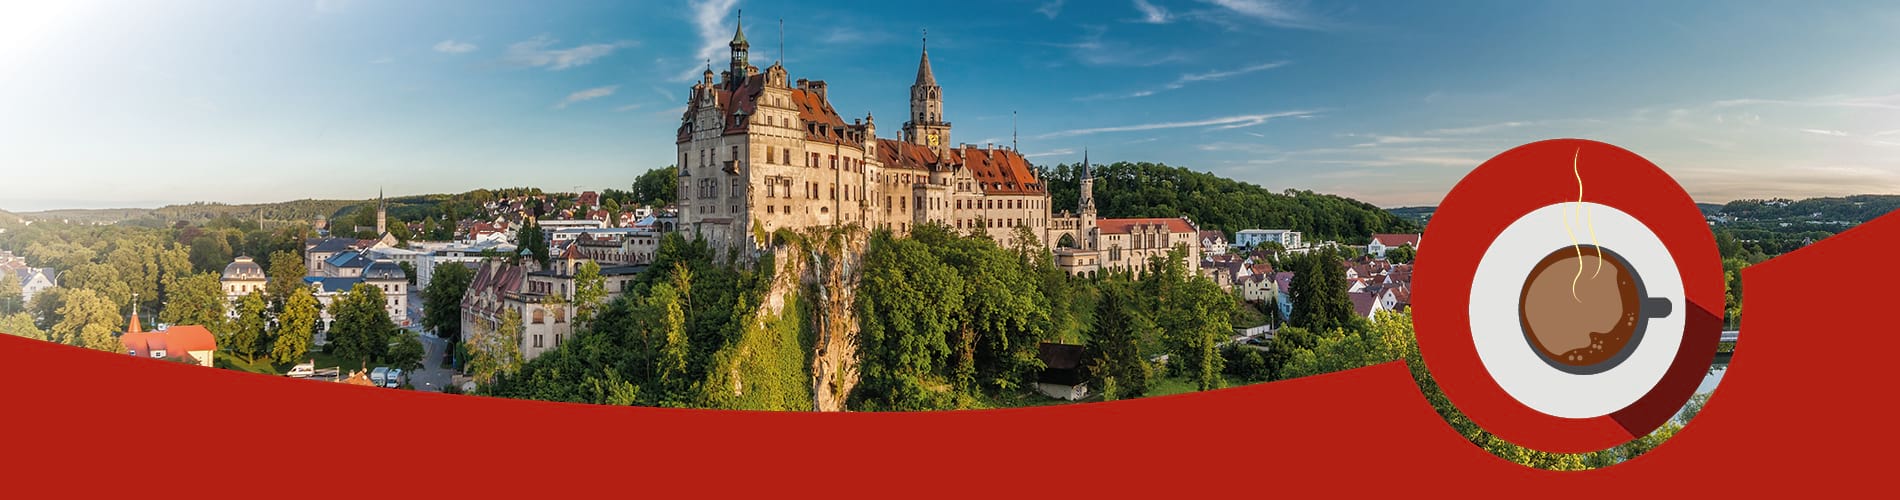 Das Bild zeigt die schöne Landschaft von Sigmaringen, insbesondere das Schloss Sigmaringen. Eine gezeichnete Kaffeetasse assoziiert das Thema "Newsletter am Morgen" der Schwäbischen Zeitung.